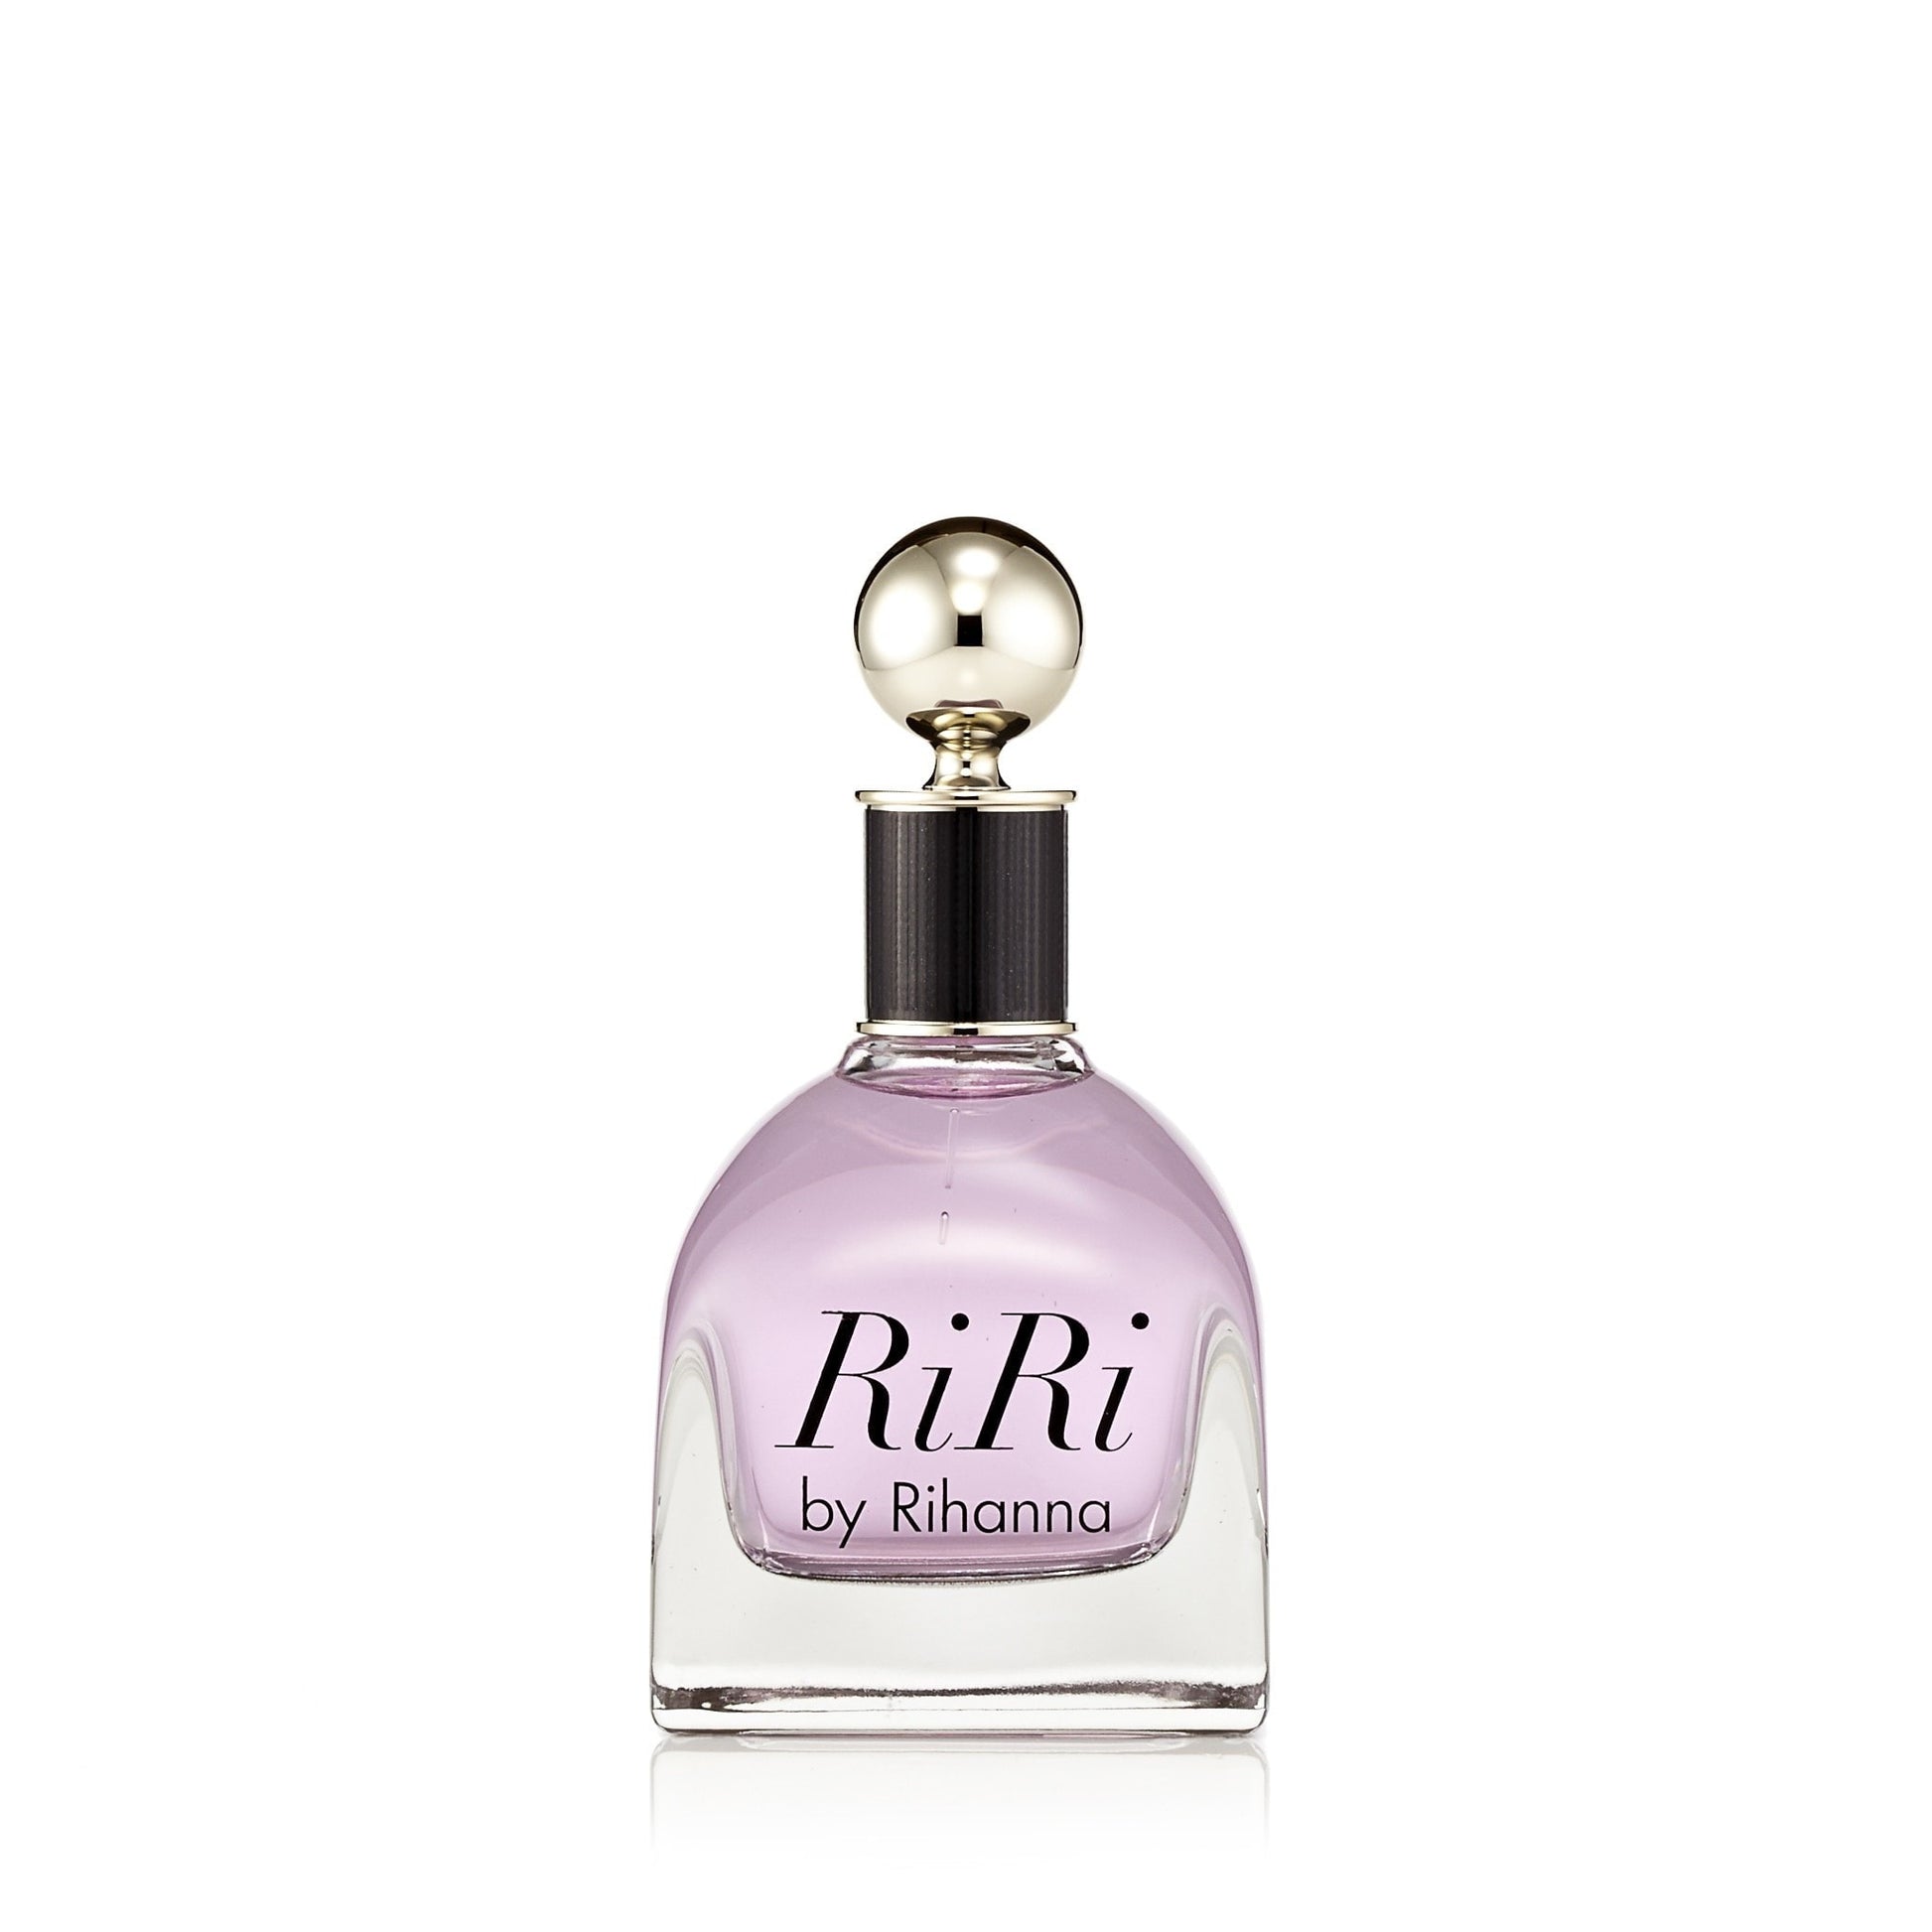 Ri Ri Eau de Parfum Spray for Women by Rihanna 3.4 oz. Click to open in modal